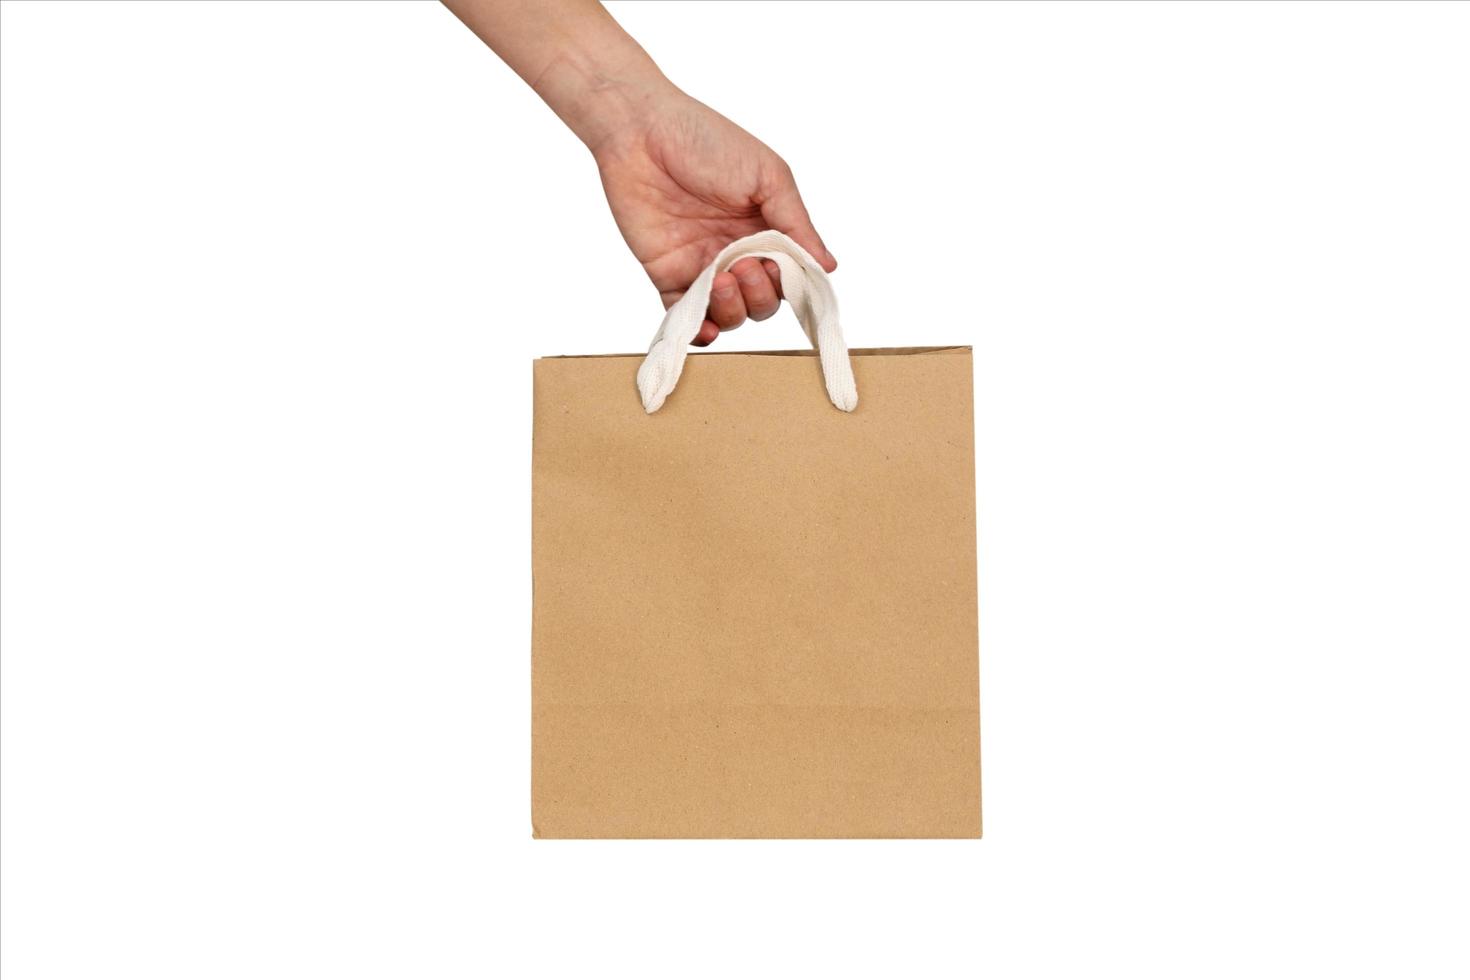 maquete de uma mão segurando um saco de papel reciclado isolado em um fundo branco foto